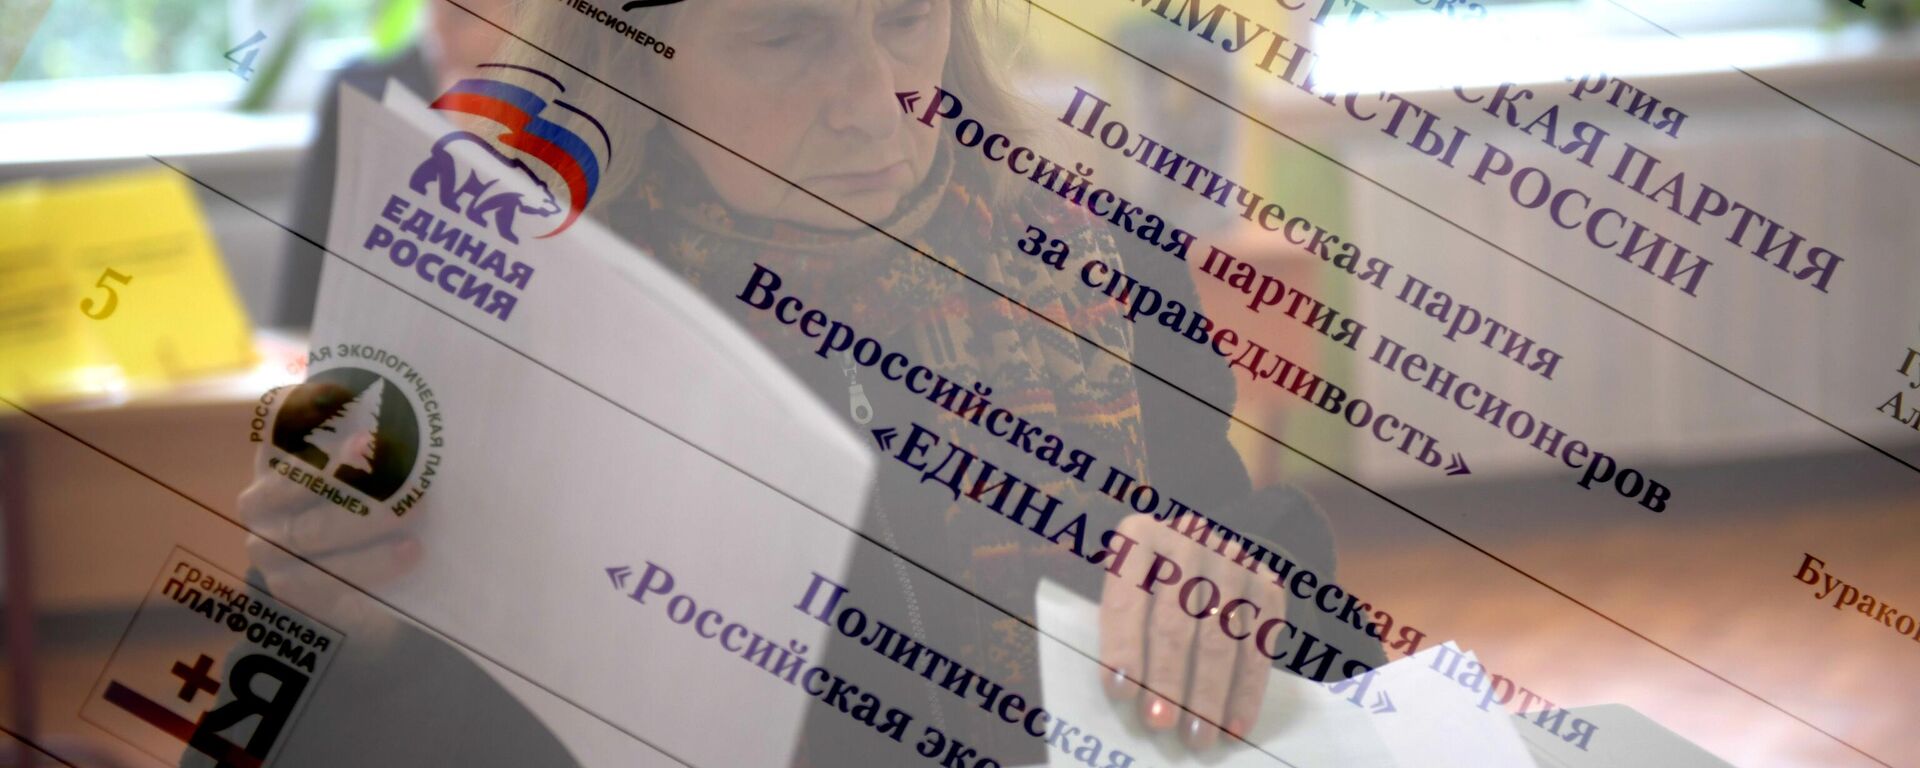 Житель Москвы в единый день голосования на избирательном участке № 90. - Sputnik Узбекистан, 1920, 07.06.2021